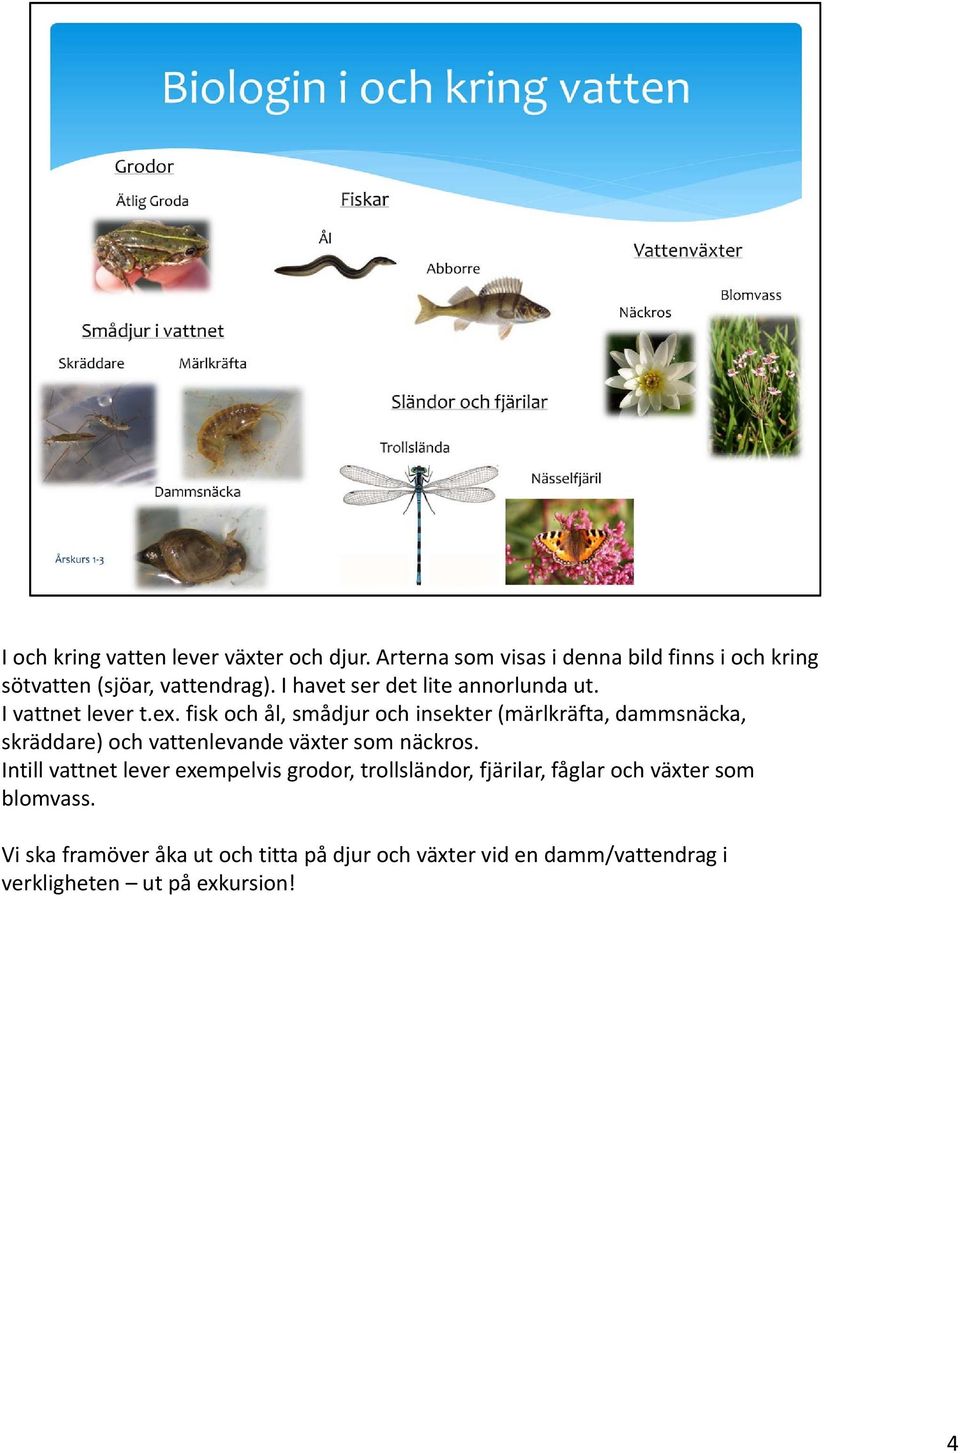 fisk och ål, smådjur och insekter (märlkräfta, dammsnäcka, skräddare) och vattenlevande växter som näckros.